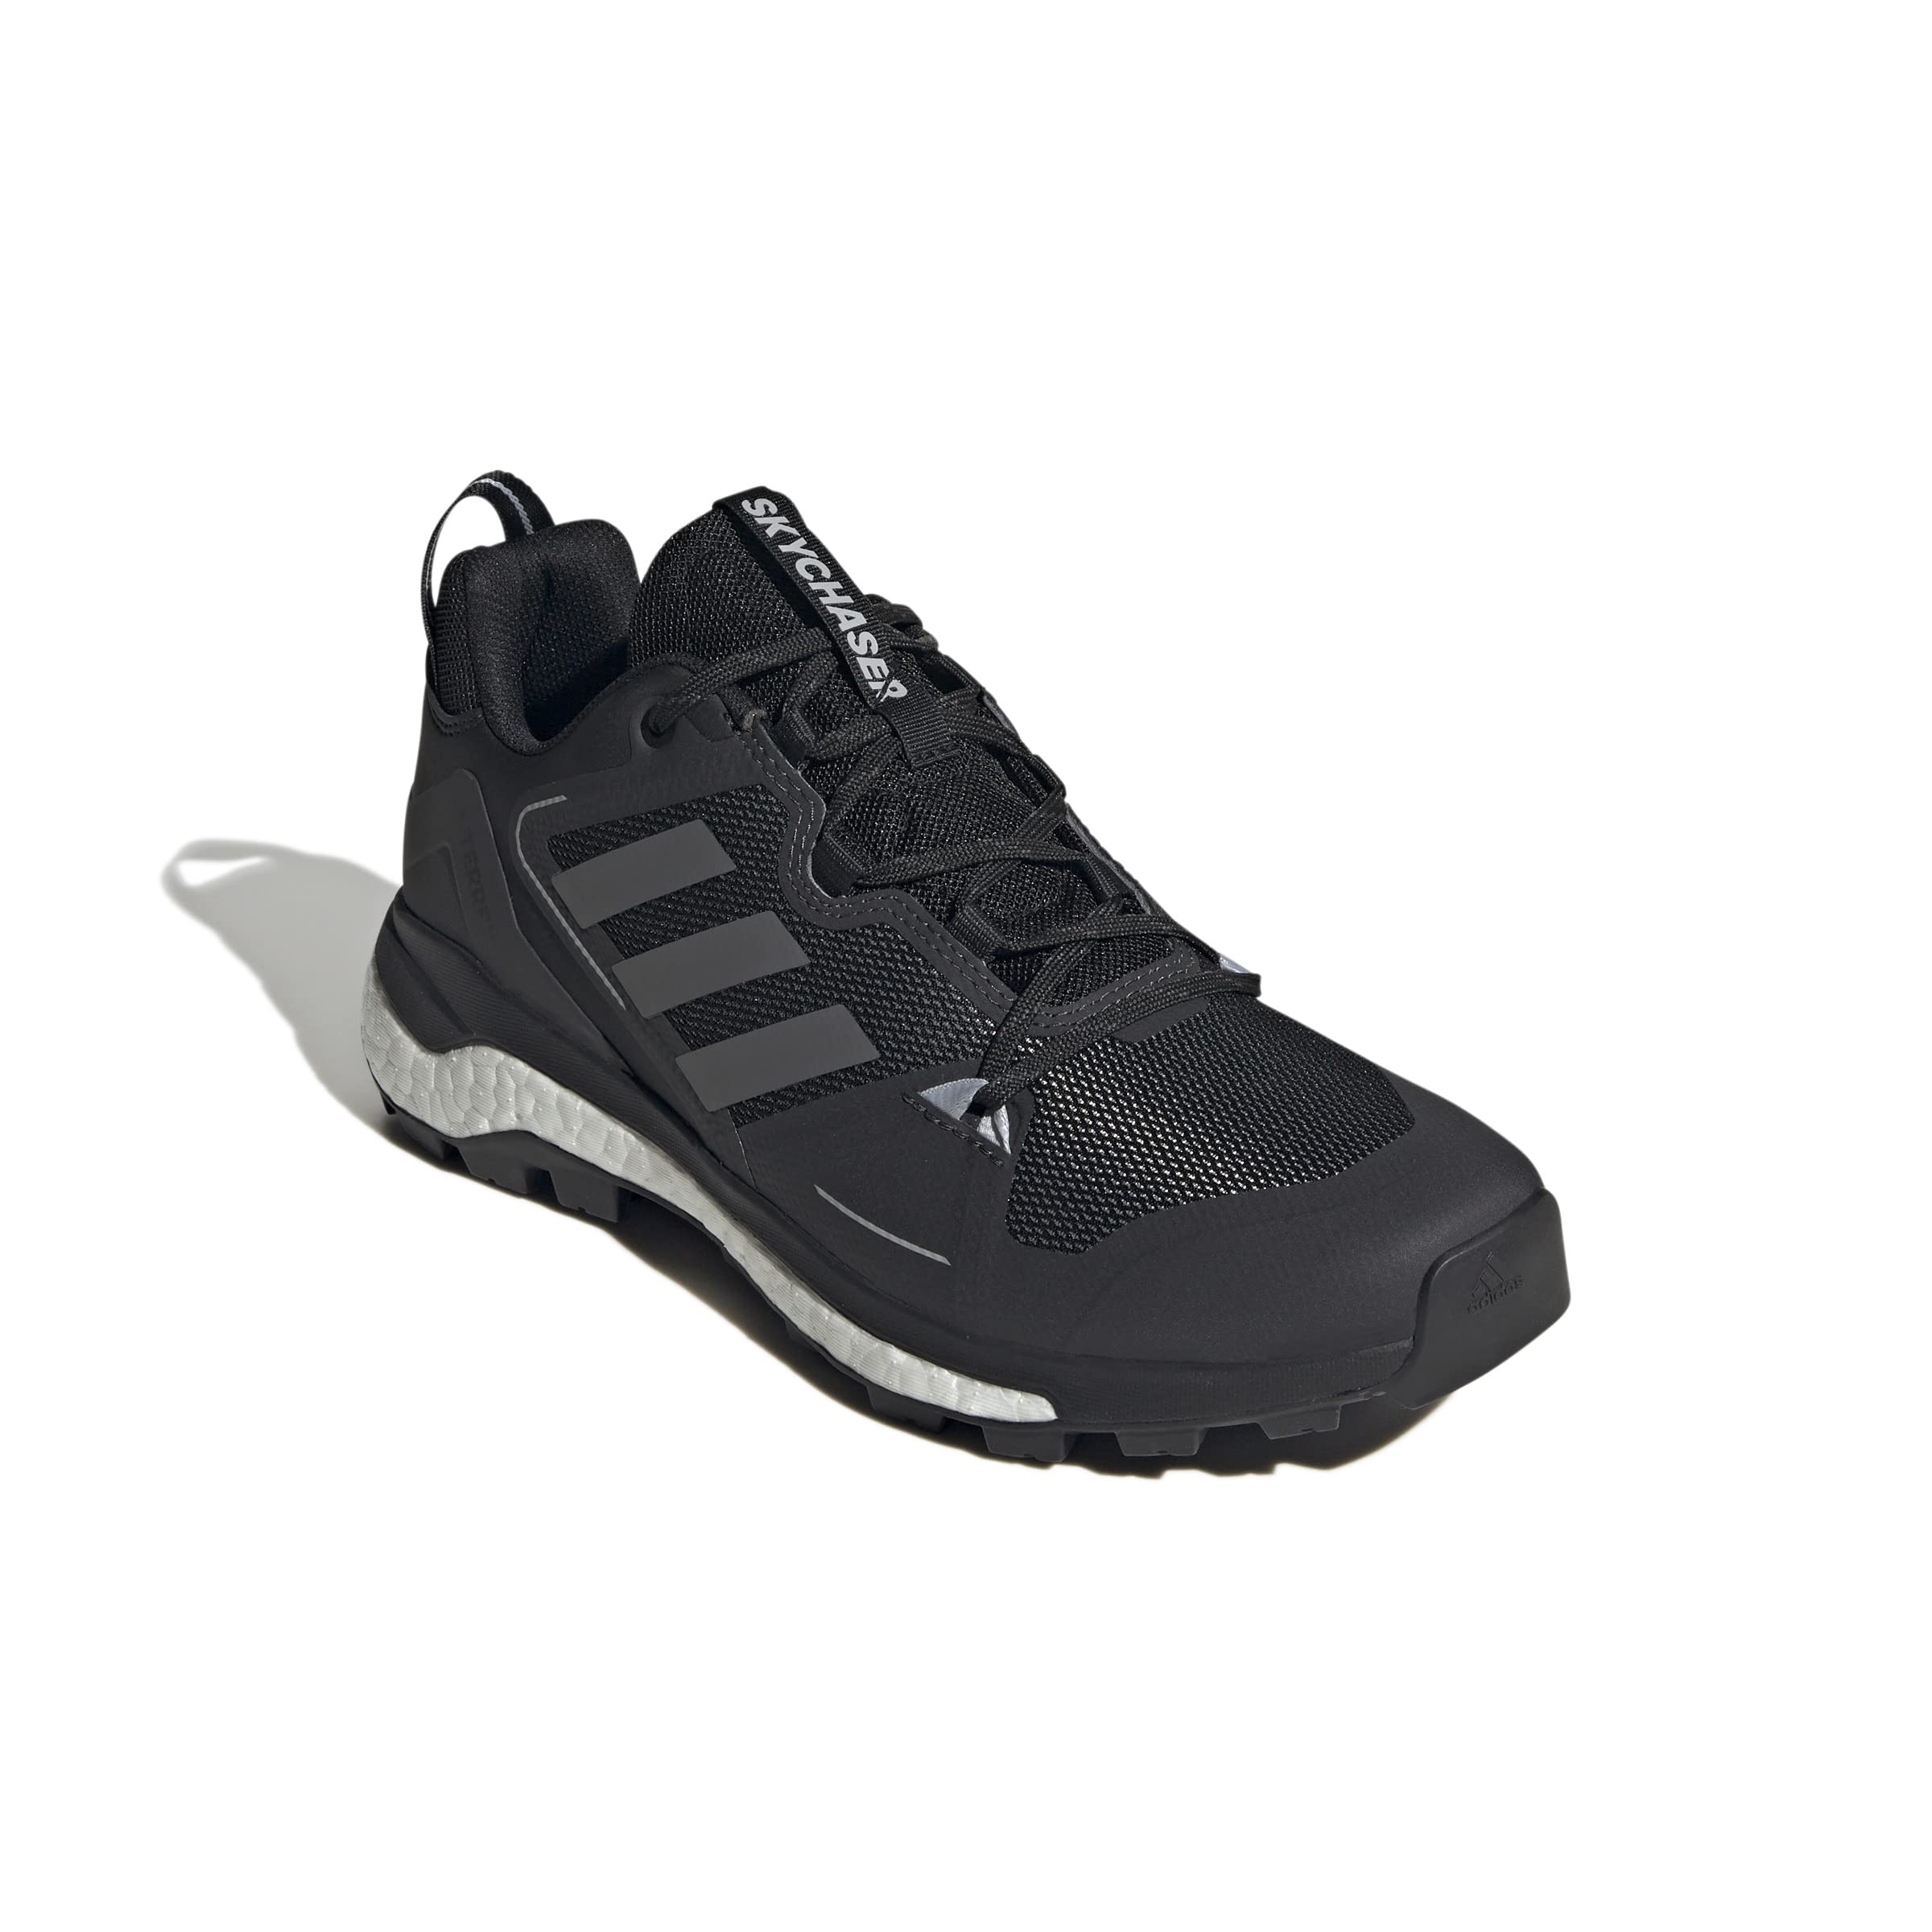 Ботинки для походов Adidas Terrex Skychaser 2.0 для мужчин Adidas